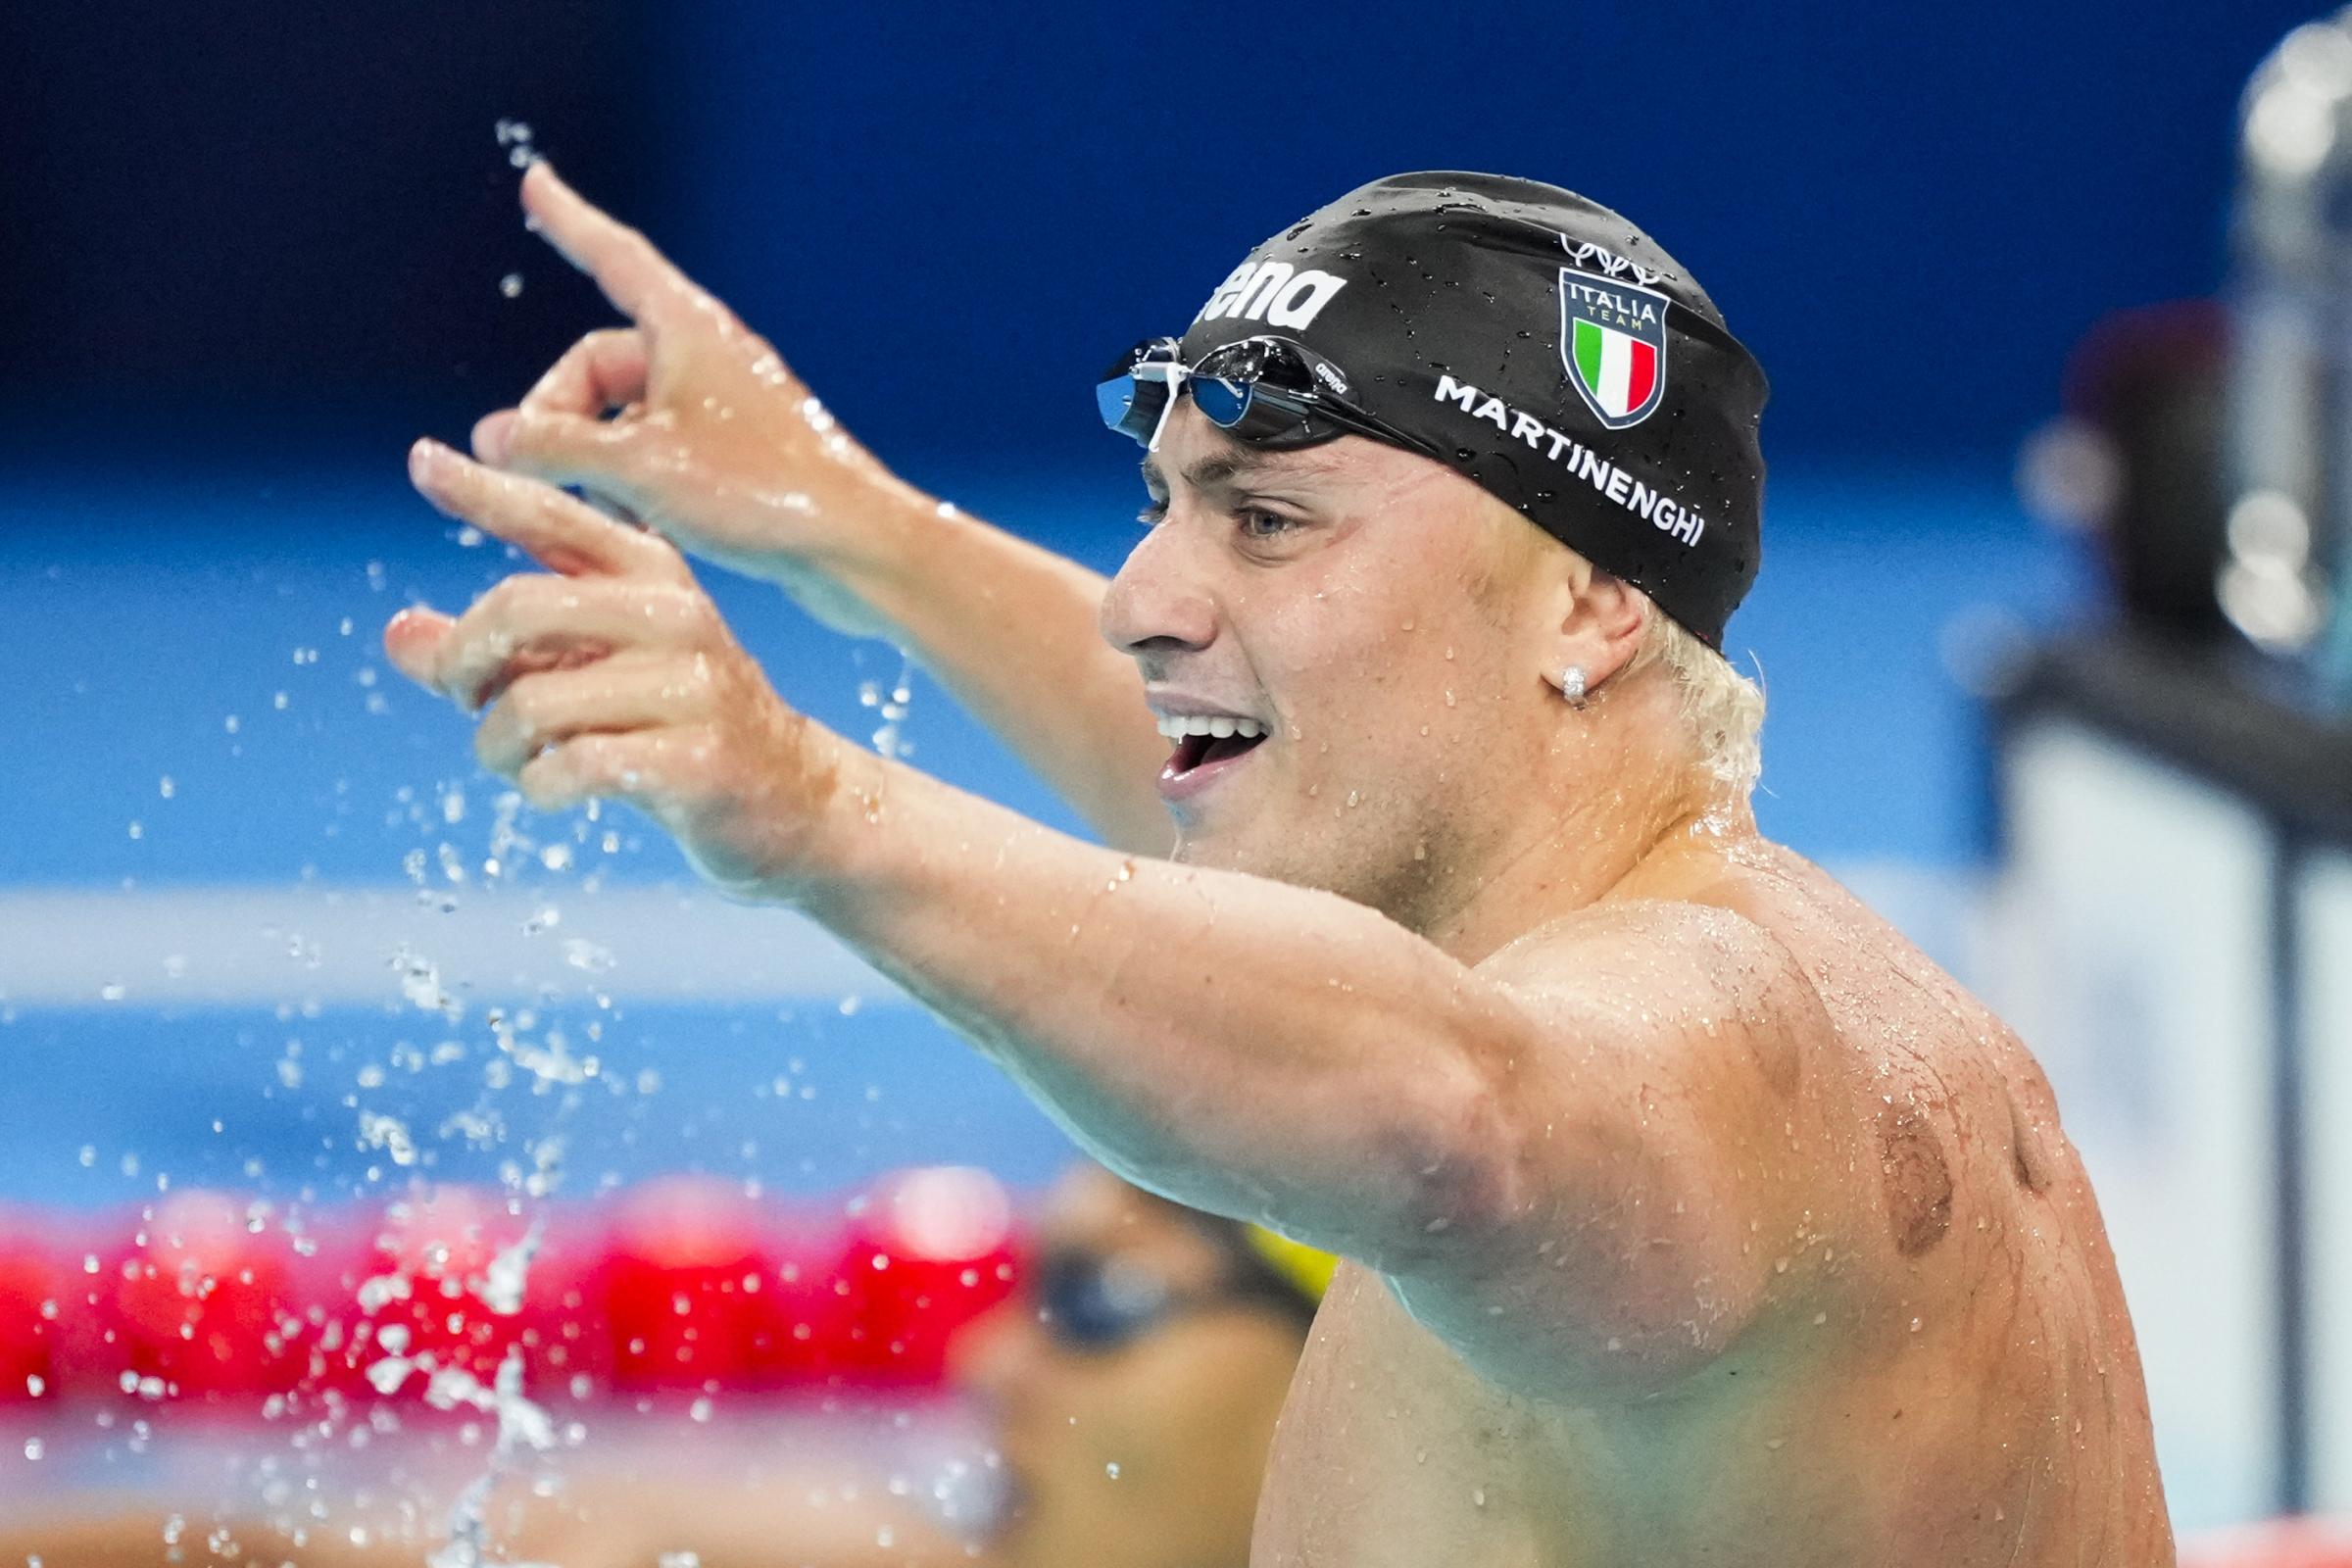 Nuoto, Martinenghi emula Fioravanti dopo 24 anni. E l’Italia torna a tingersi d’oro dopo Rio 2016